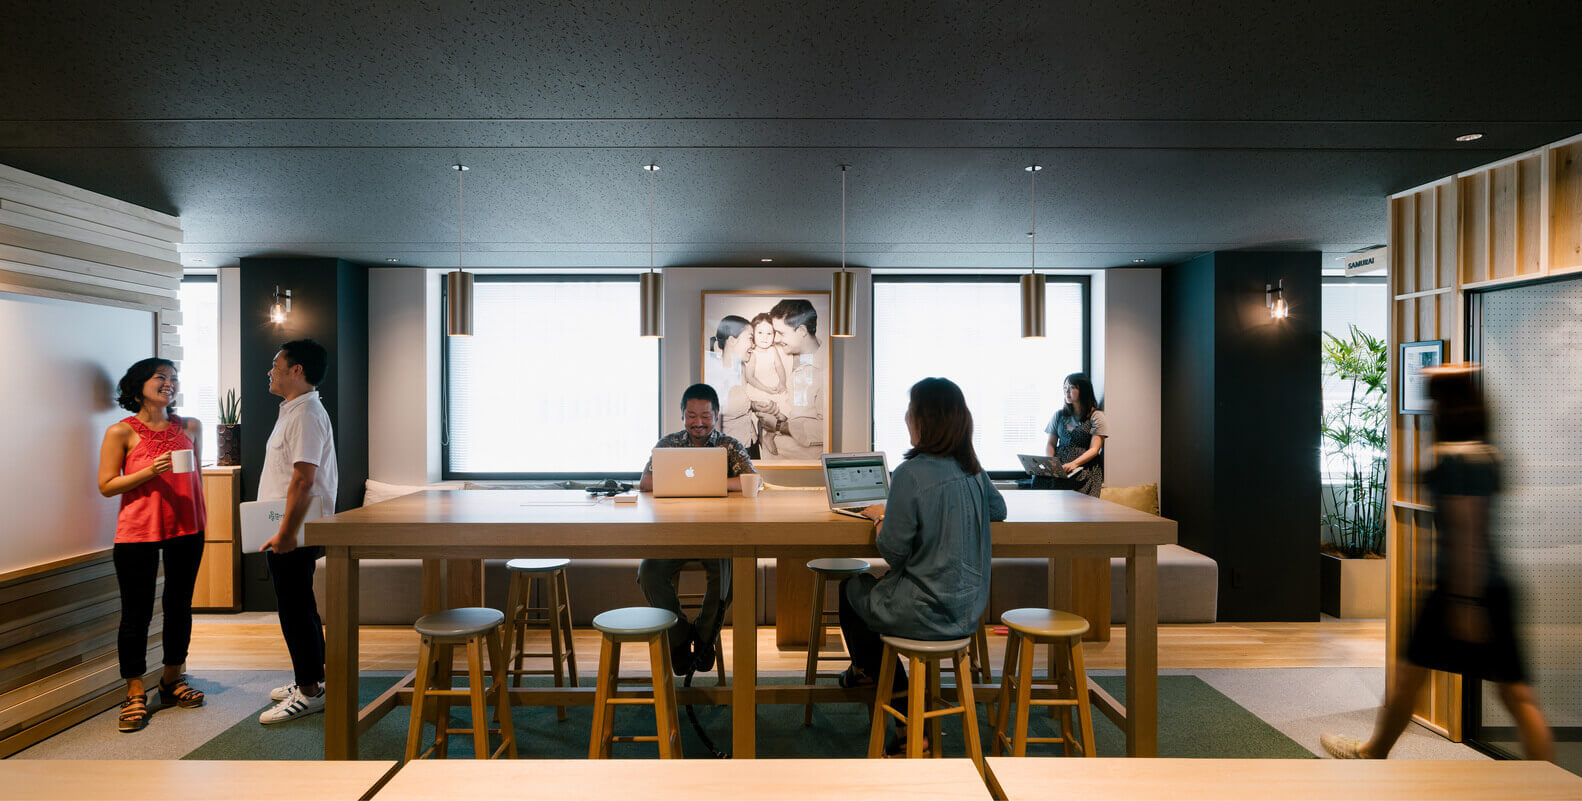 室内设计，办公空间，东京Airbnb办公室，办公室设计，“belong anywhere”理念，功能性工作空间